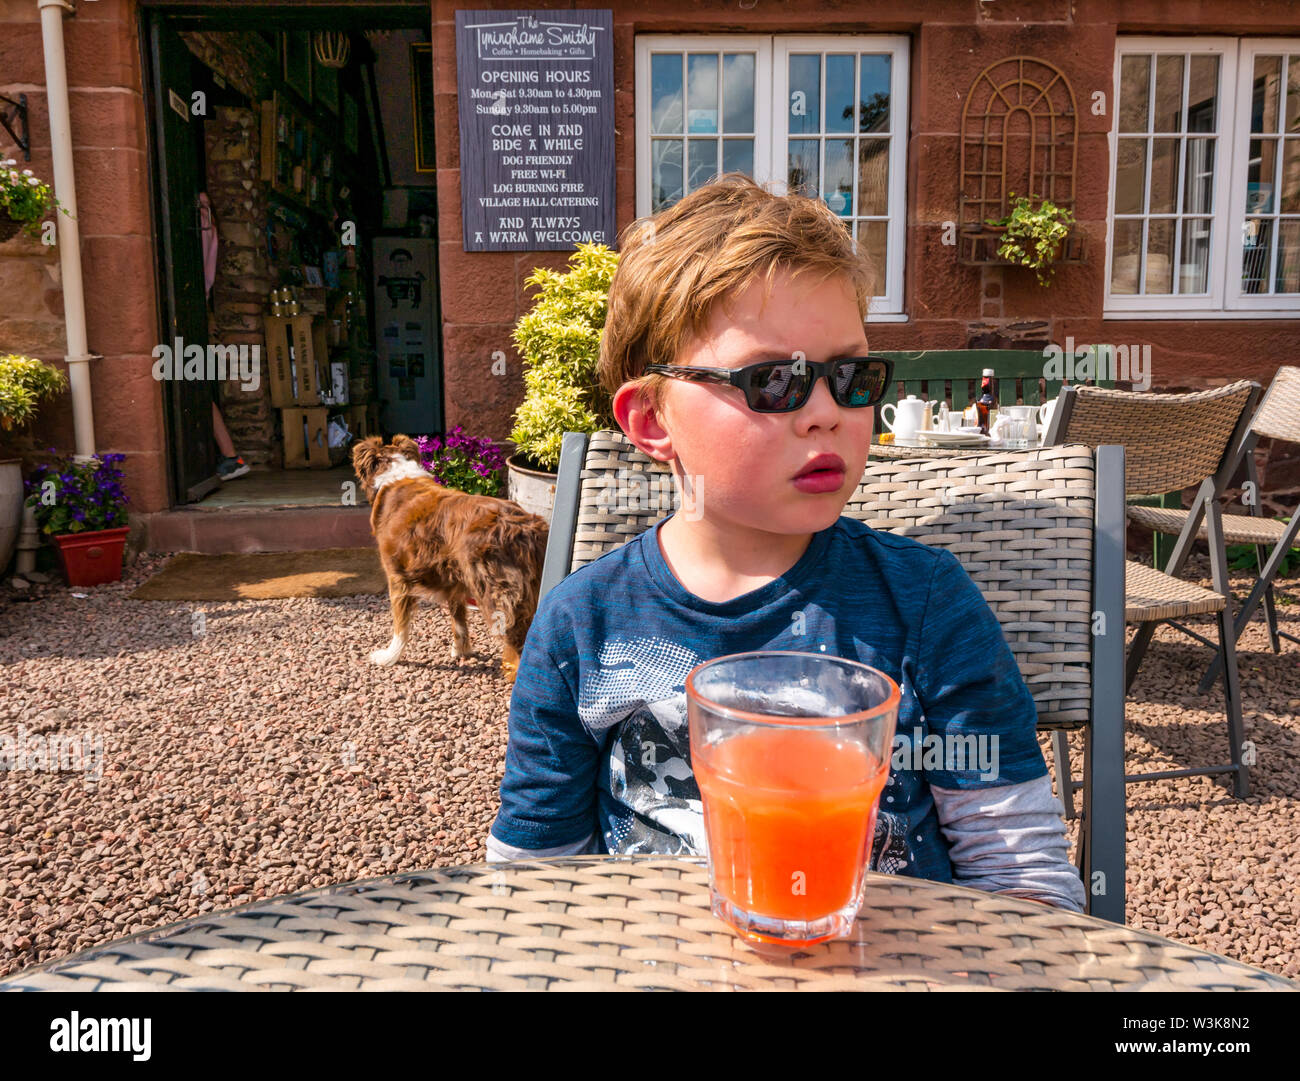 Tyninghame Schmiede Teestube, tyninghame Dorf, East Lothian, Schottland, Vereinigtes Königreich, 16. Juli 2019. UK Wetter: Sonnenschein am Café im Freien. Jamie, 8 Jahre alt, genießt ein kaltes Getränk mit Kohlensäure Stockfoto